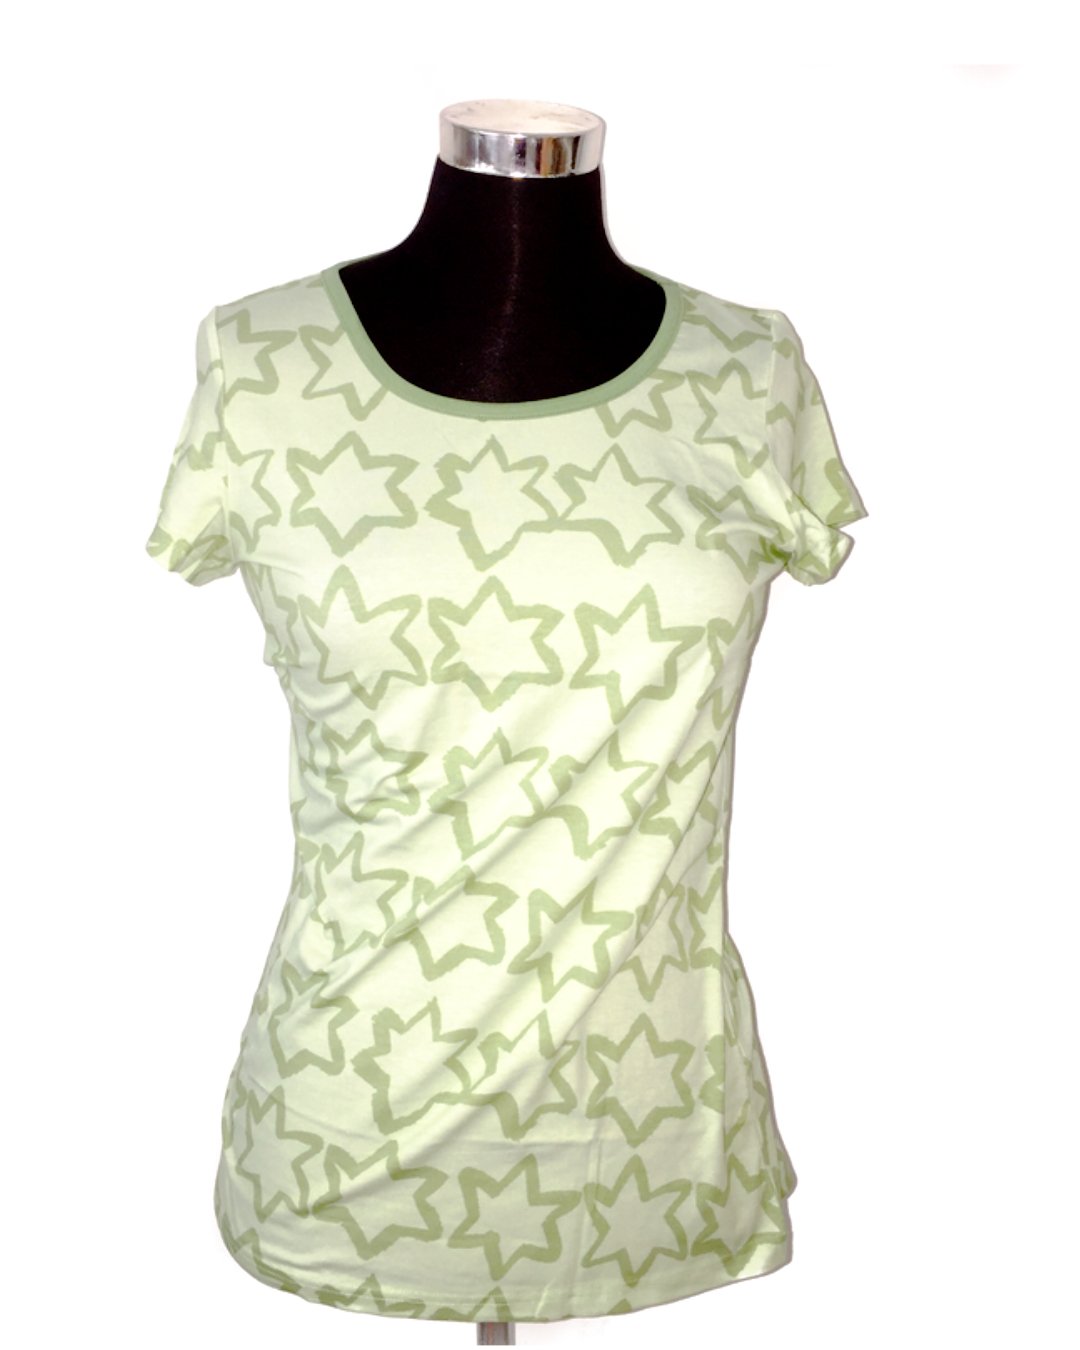 Grünes T-Shirt mit Sternen Print Von DUNS Sweden aus Biobaumwolle 